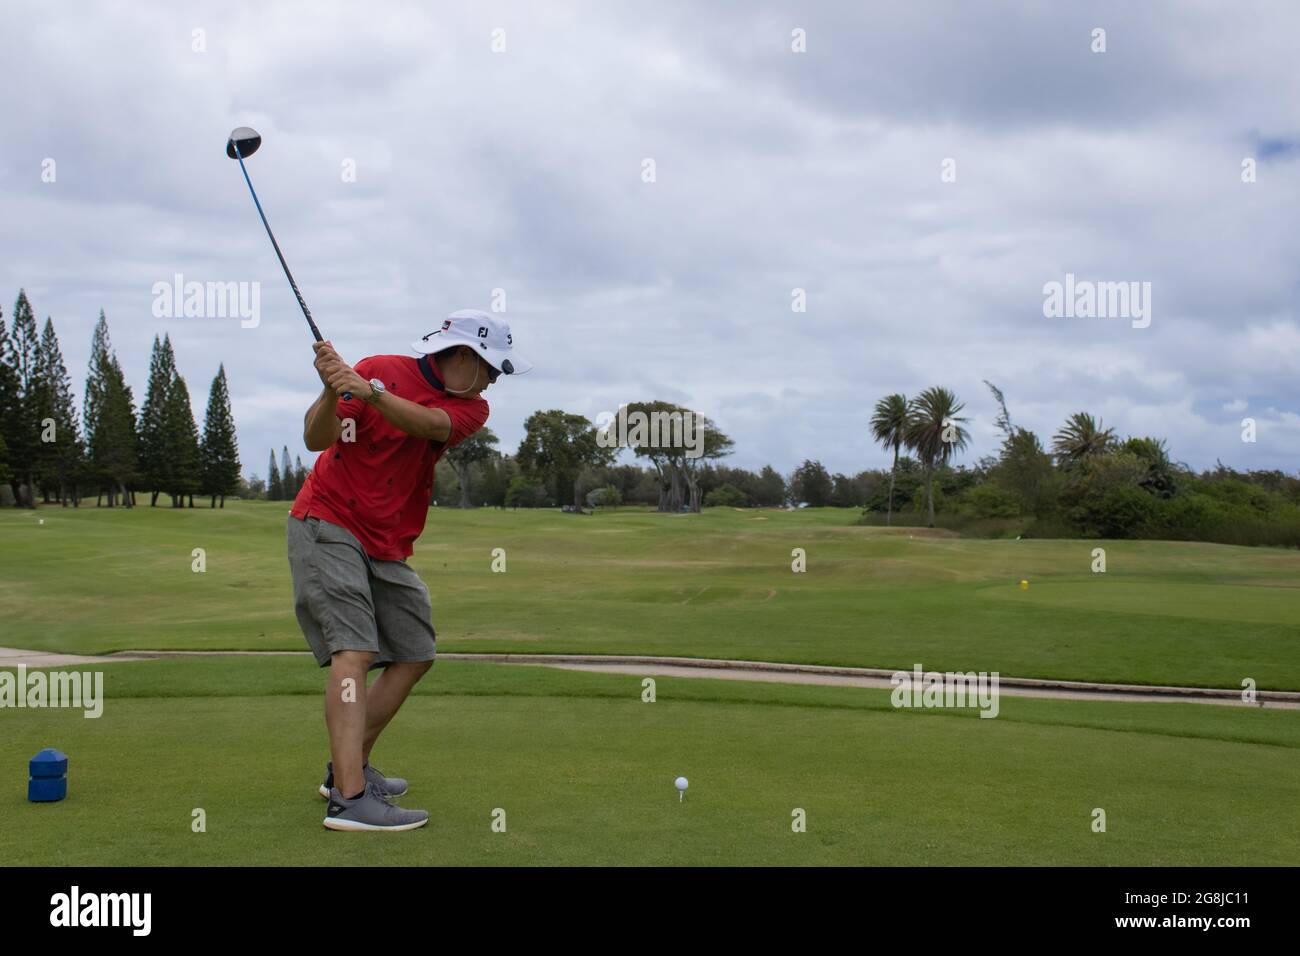 Captura de un jugador de golf en su swing Foto de stock